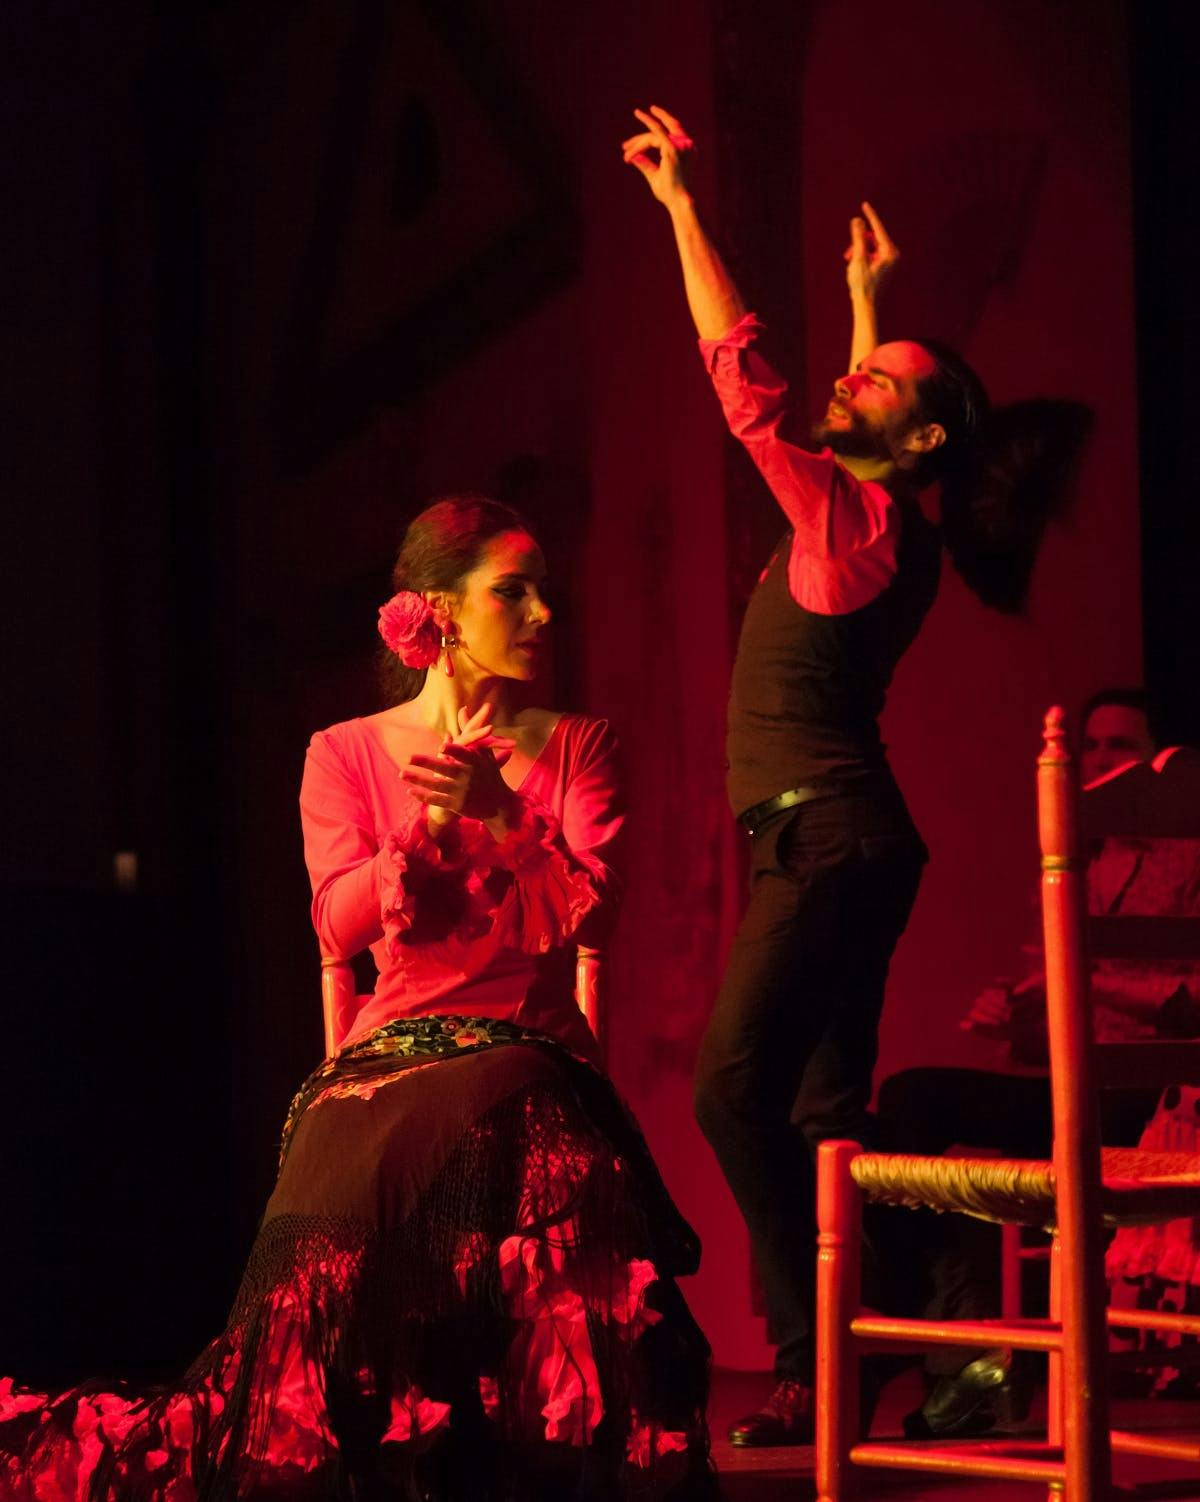 Bilety wstępu na pokaz flamenco w El Palacio Andaluz